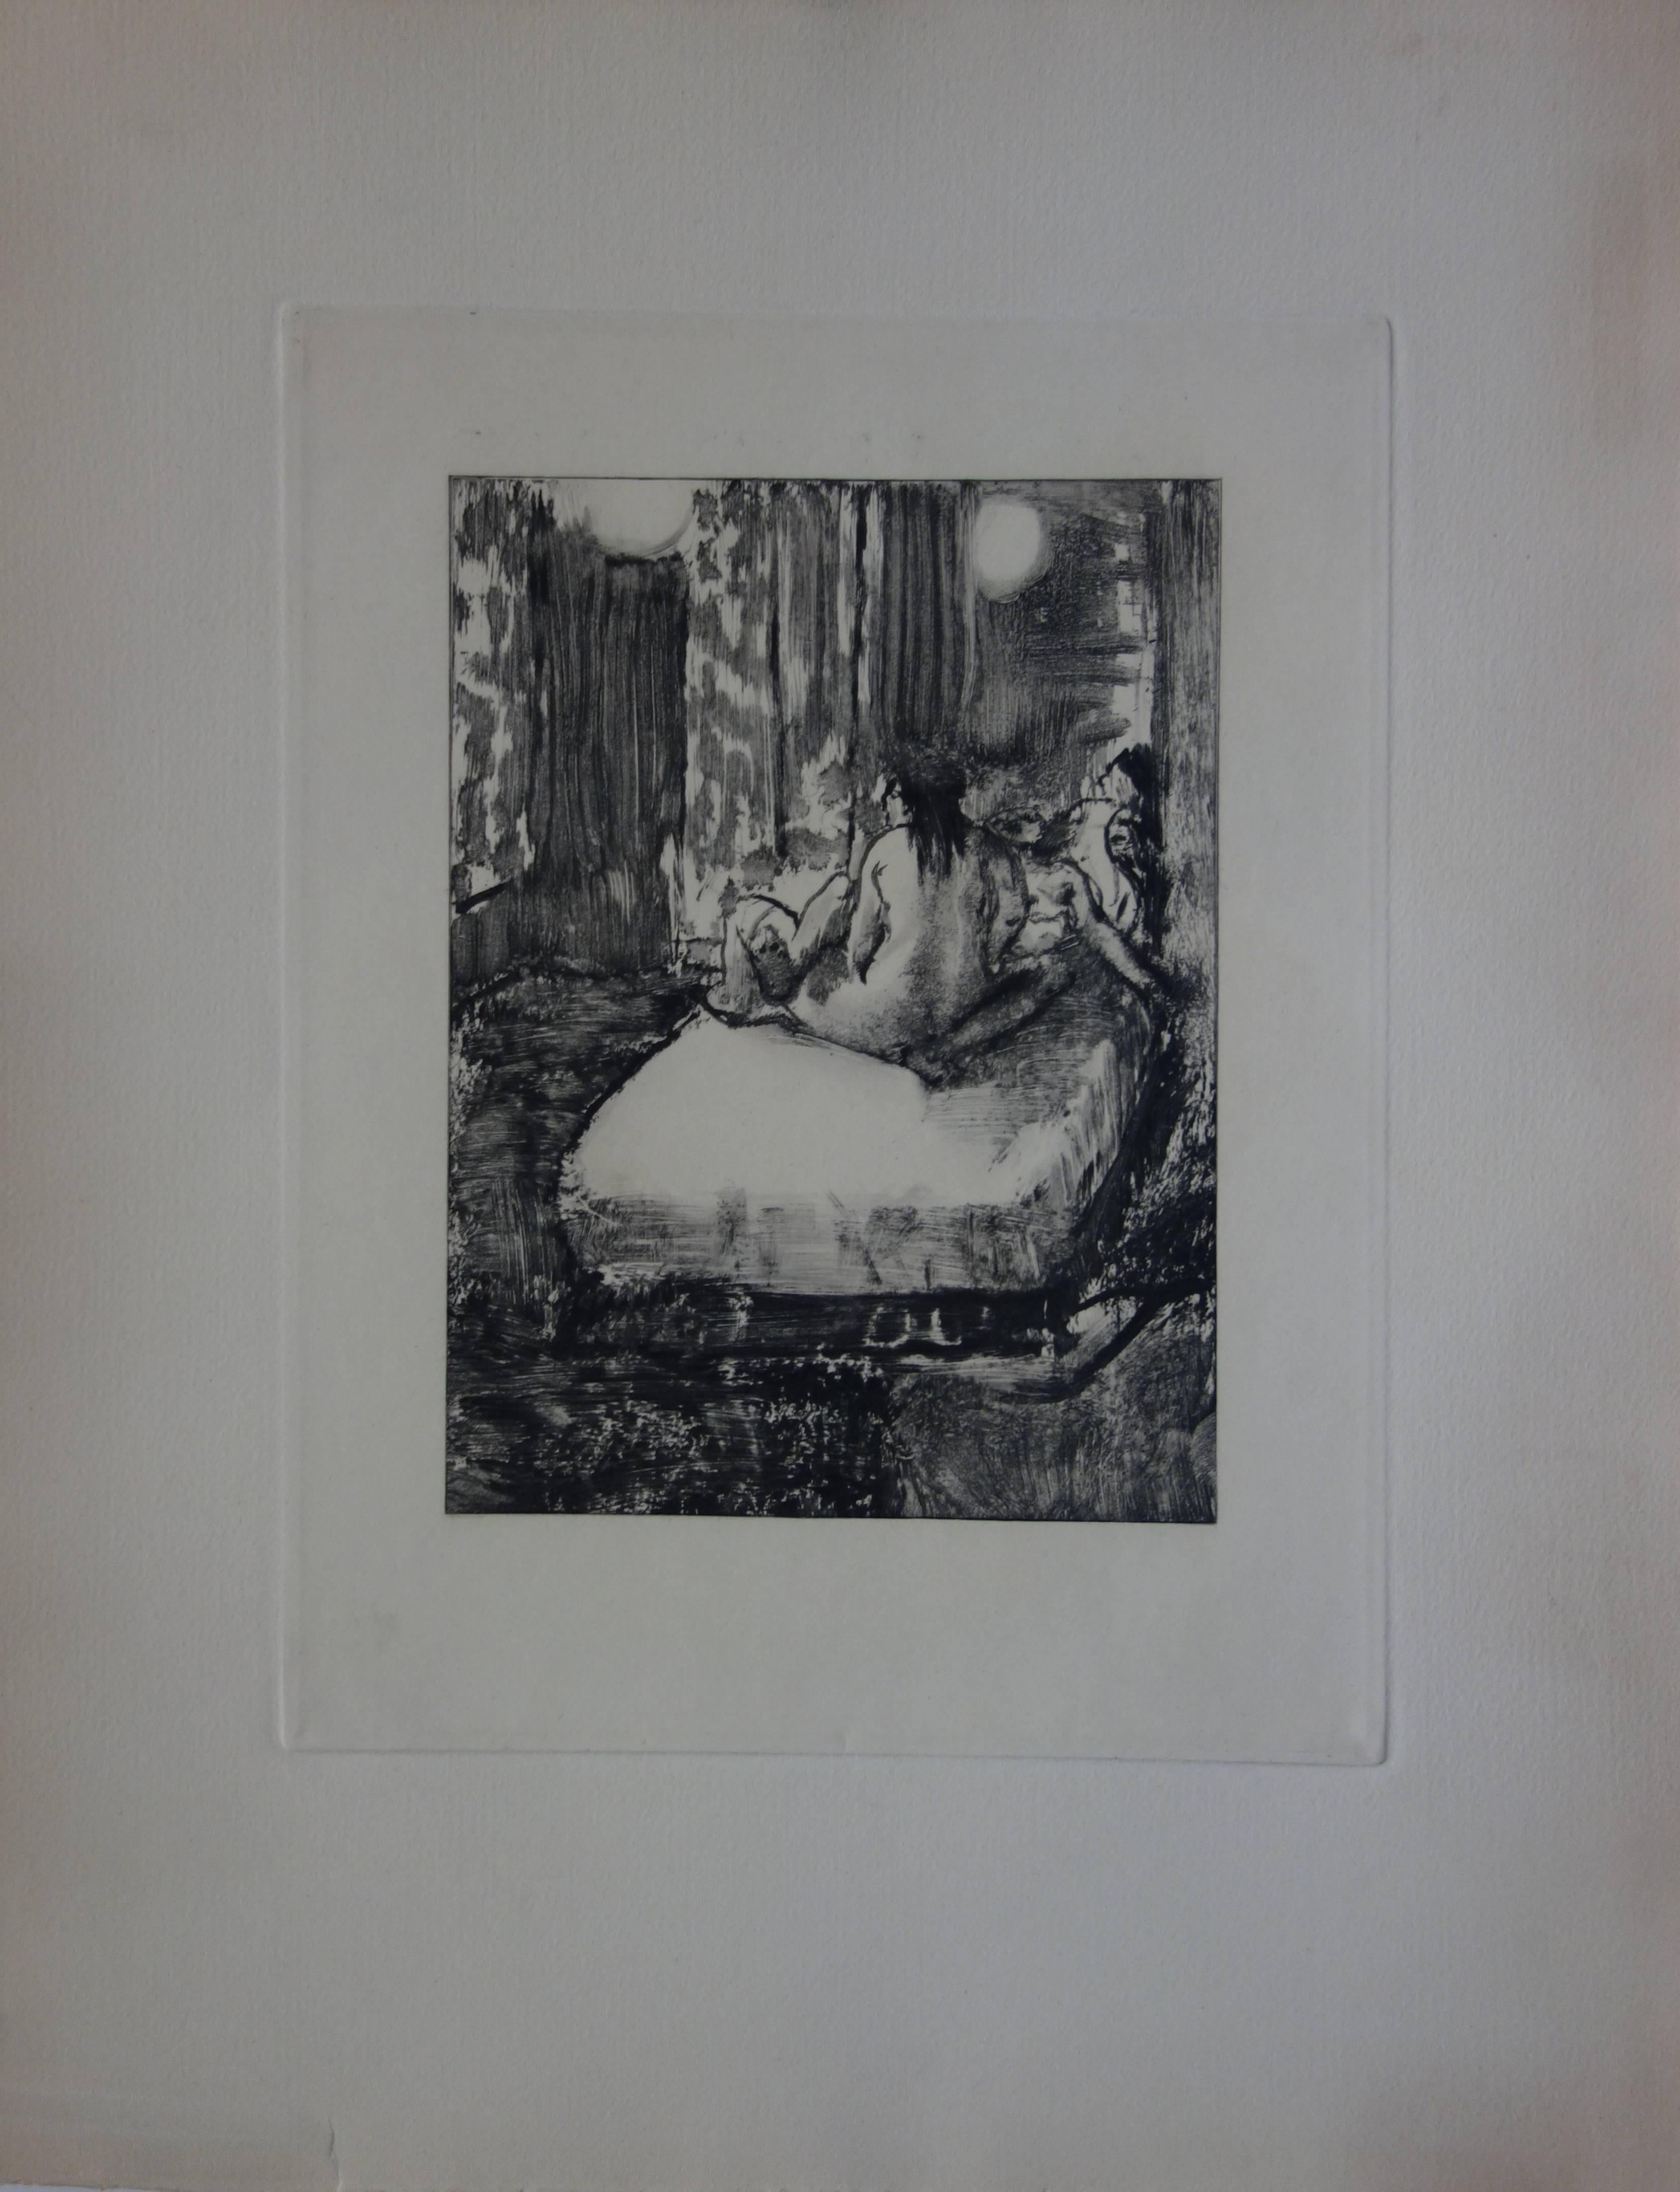 Die Gewächshausszene: In der Intimität des Raums - Radierung – Print von (after) Edgar Degas